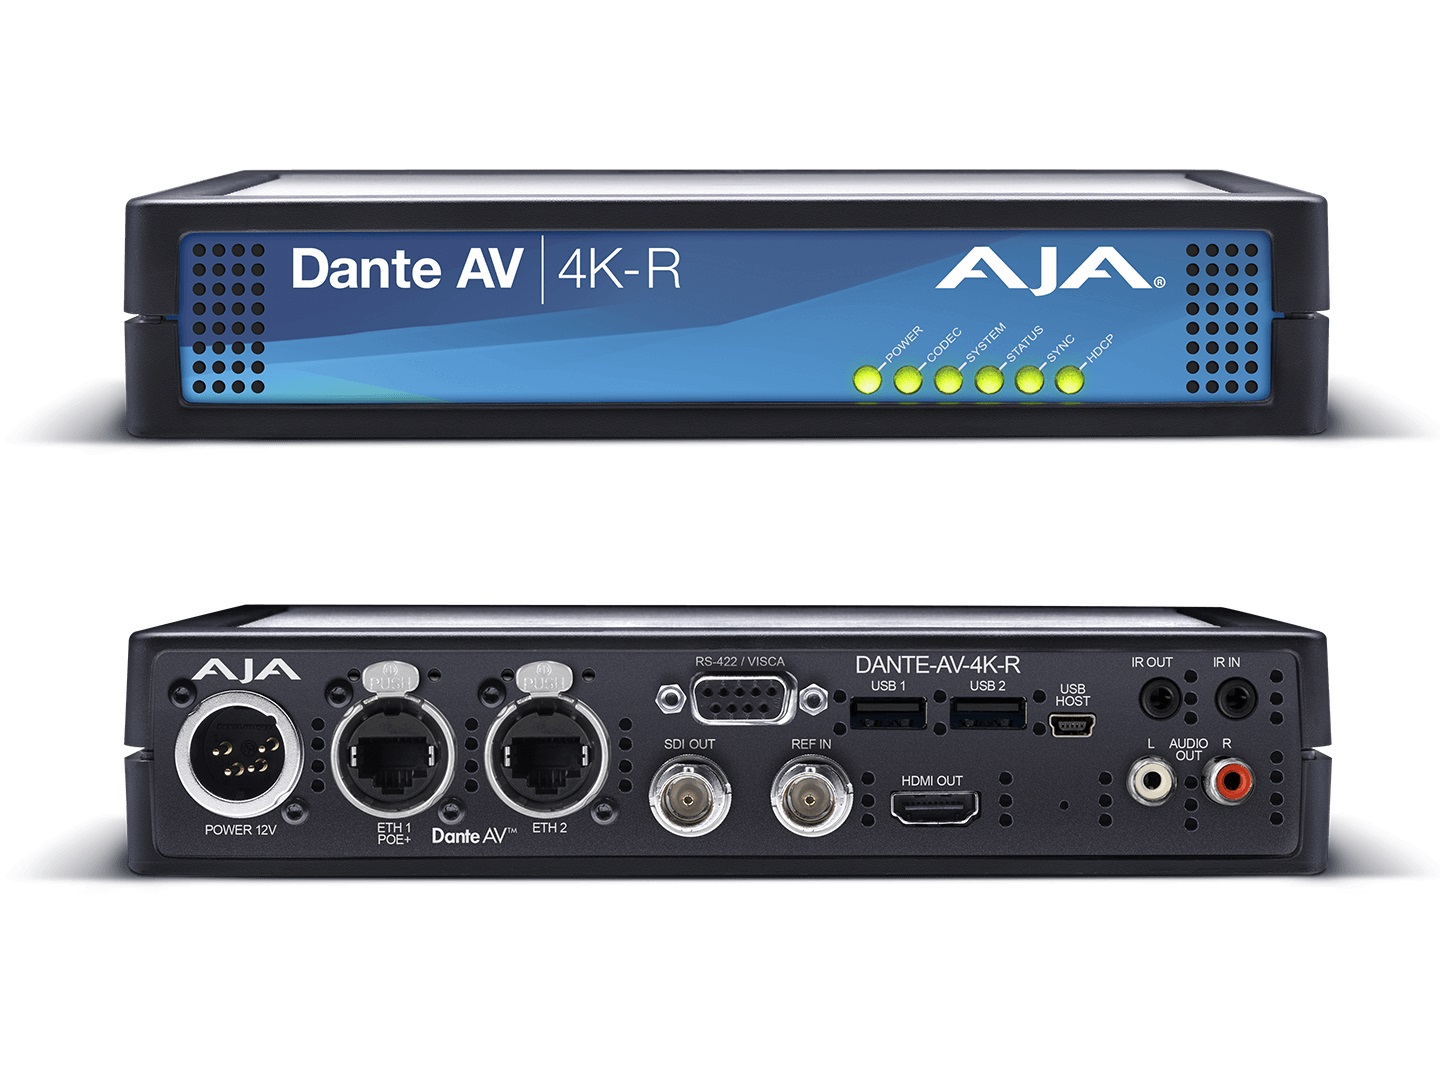 AJA DANTE-AV-4K-R Decode Dante AV Ultra JPEG 2000 into 12G/HDMI Video with Embedded Audio (Receiver)